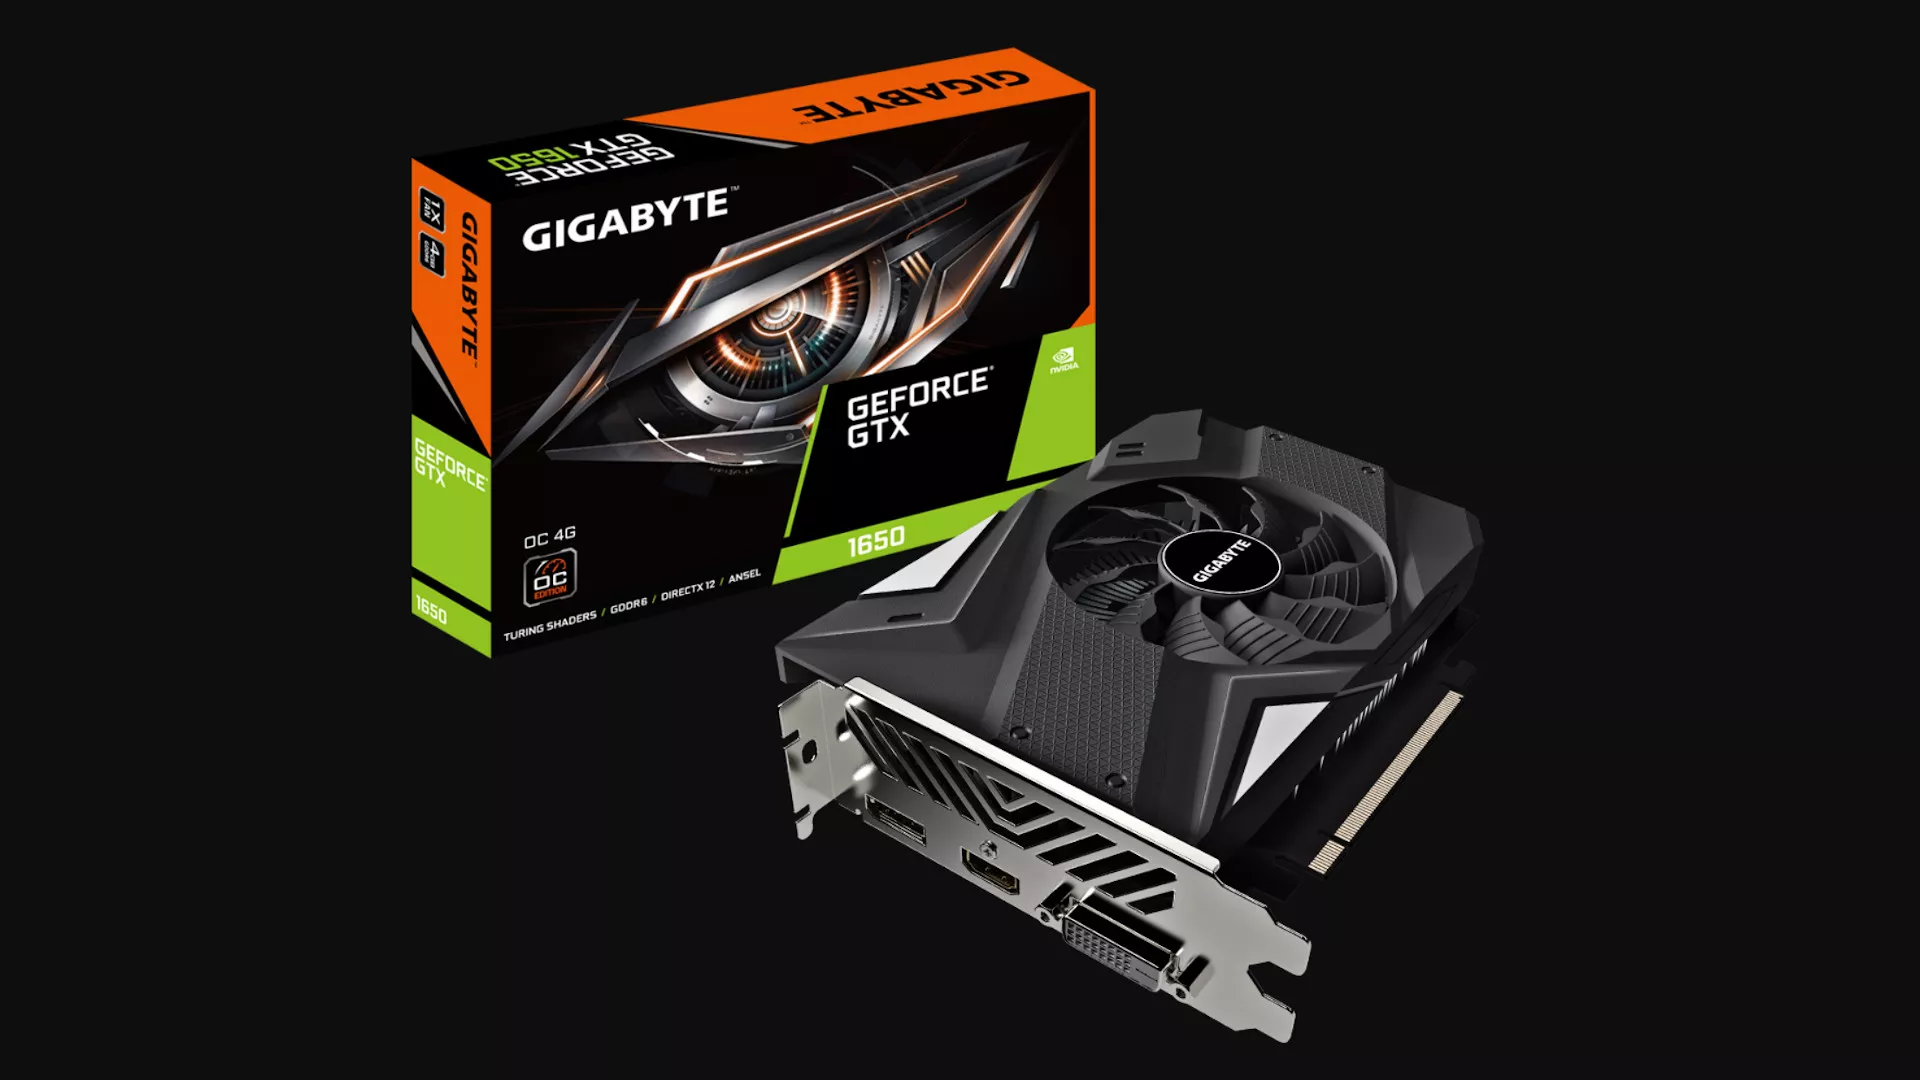 Η GeForce GTX 1060 δεν είναι πλέον η δημοφιλέστερη GPU σύμφωνα με έρευνα του Steam